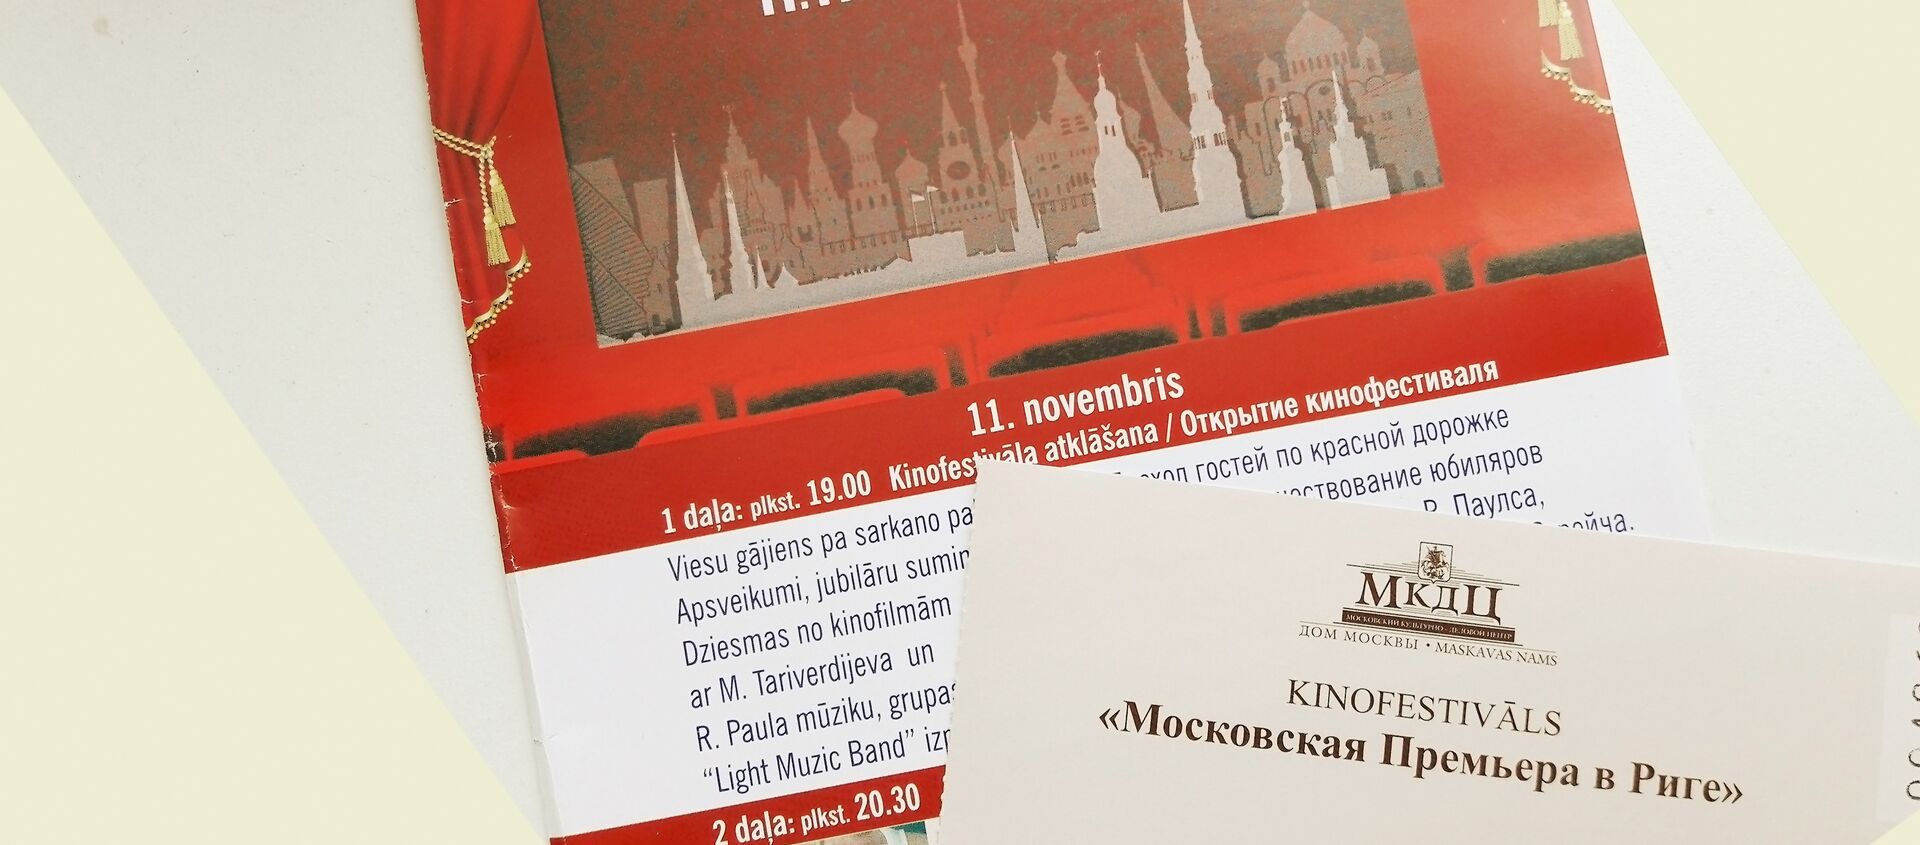 Билеты на кинофестиваль Московская премьера в Риге - Sputnik Латвия, 1920, 31.10.2020